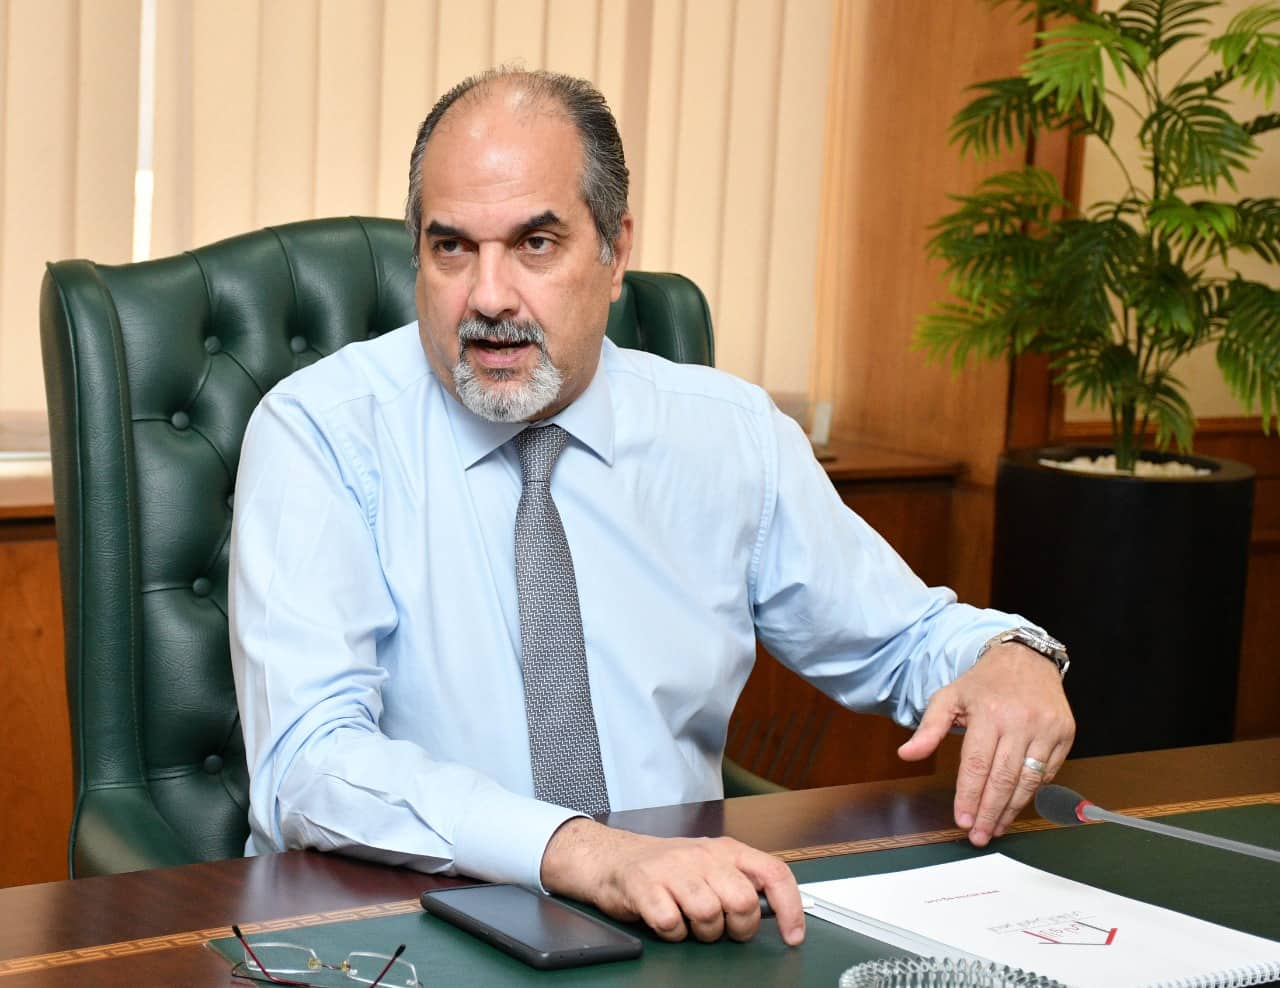 أيمن عبد الحميد نائب رئيس مجلس إدارة والعضو المنتدب لشركة الأولى للتمويل العقاري